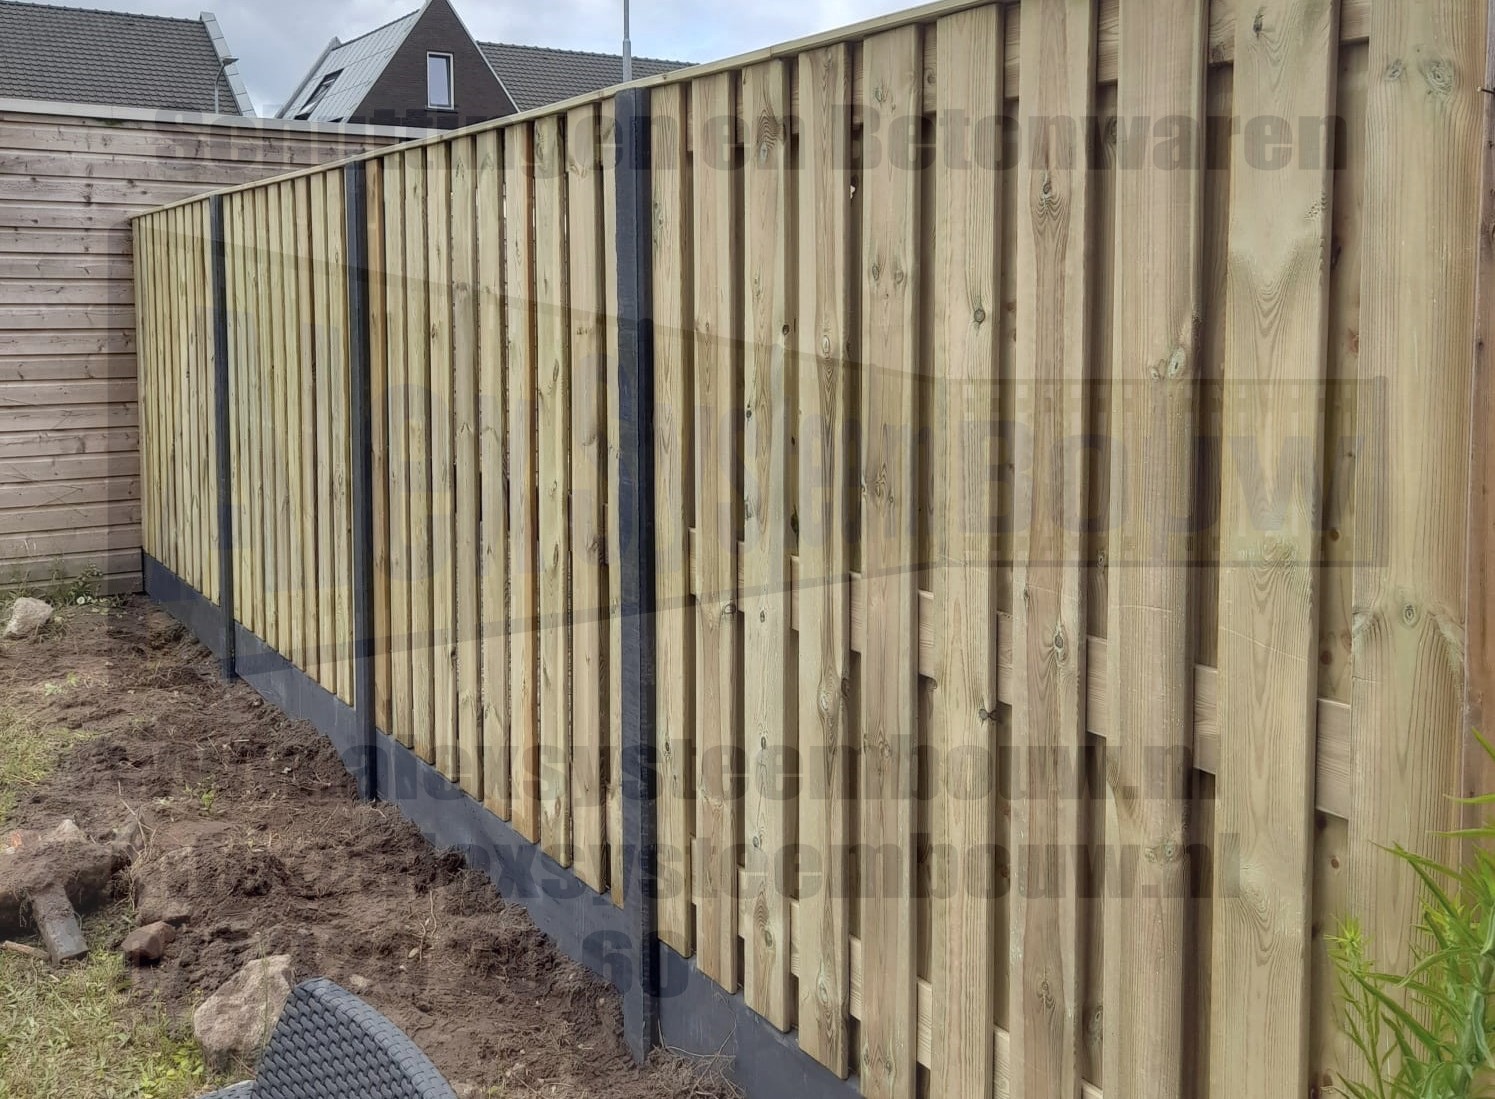 21 planks grenen tuinschermen voorzien van extra middenplank i.c.m. antracieten beton elementen en betonpalen met vlakke kop